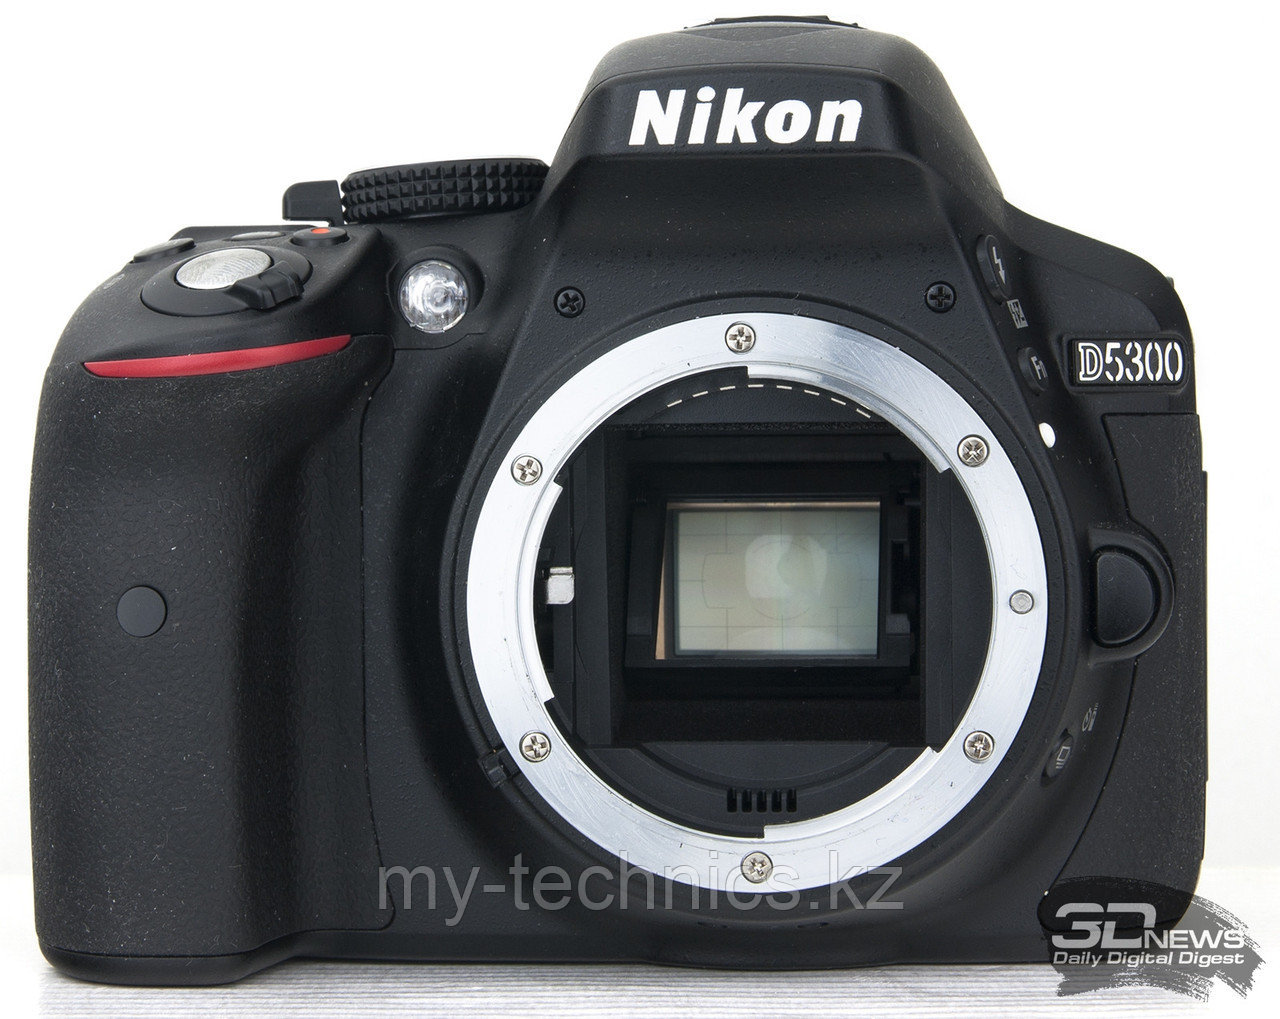 Фотоаппарат Nikon D5300 Body + Батарейный блок